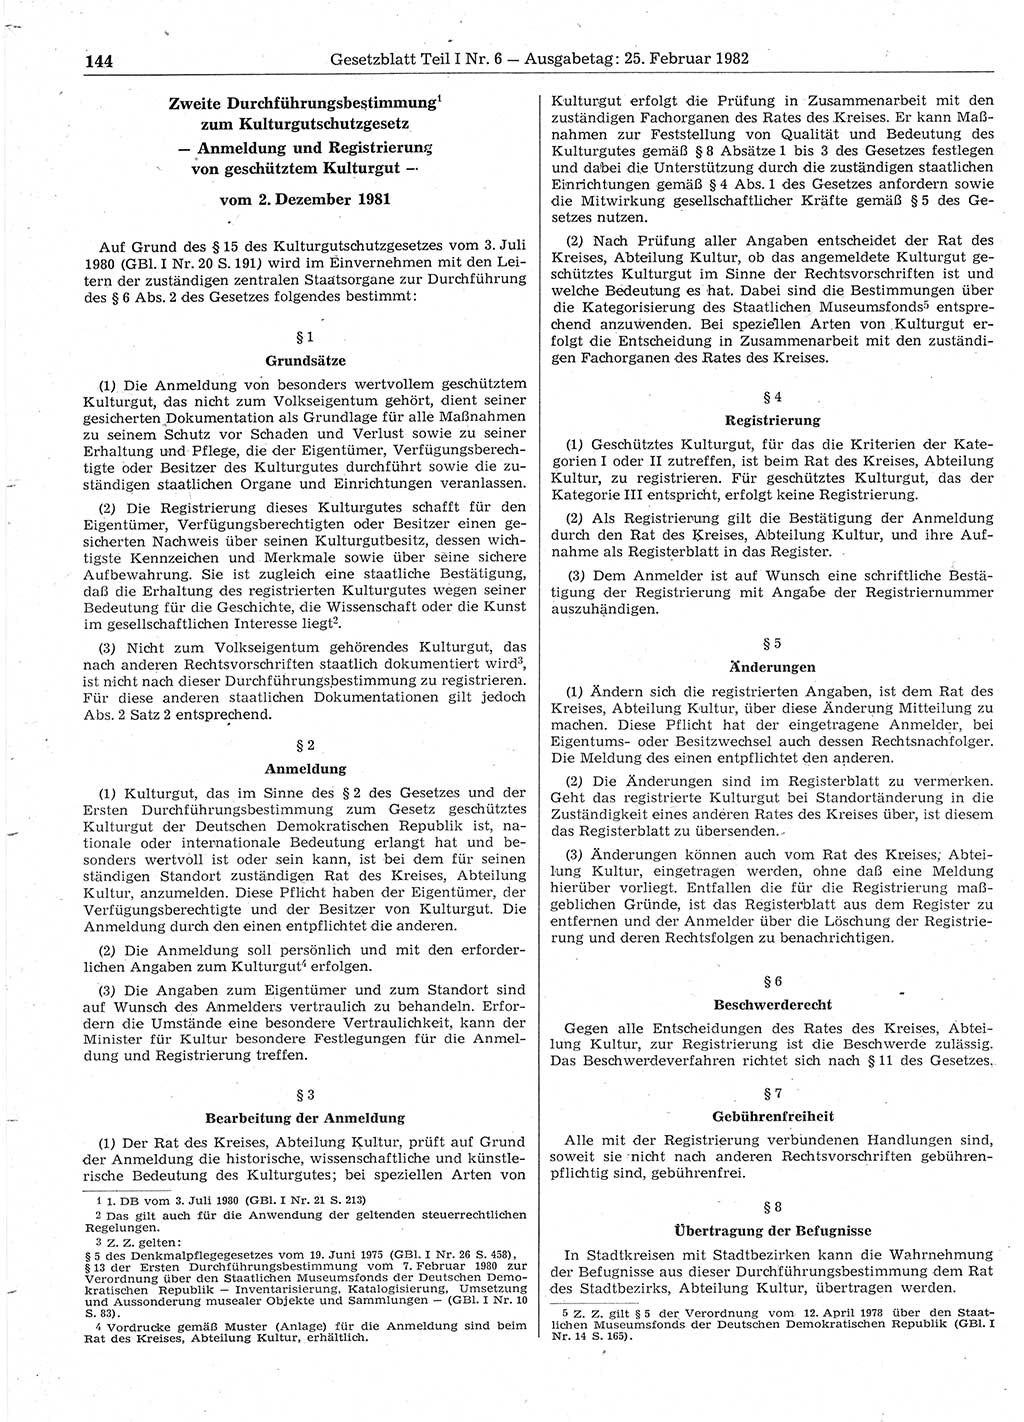 Gesetzblatt (GBl.) der Deutschen Demokratischen Republik (DDR) Teil Ⅰ 1982, Seite 144 (GBl. DDR Ⅰ 1982, S. 144)